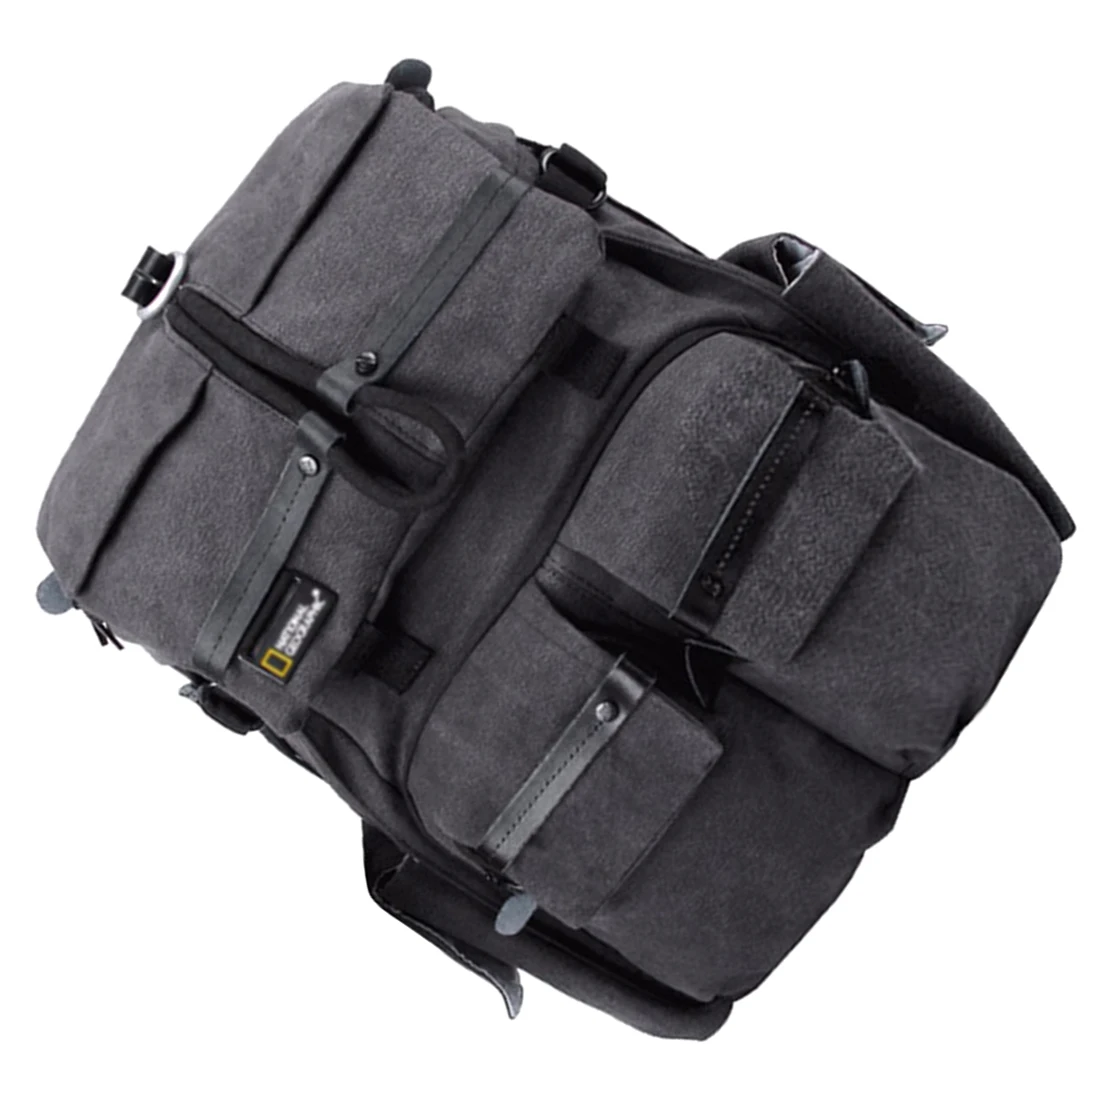 Высококачественная сумка для камеры NATIONAL GEOGRAPHIC NG W5070, рюкзак для камеры, сумка для путешествий на открытом воздухе, рюкзак для DSLR